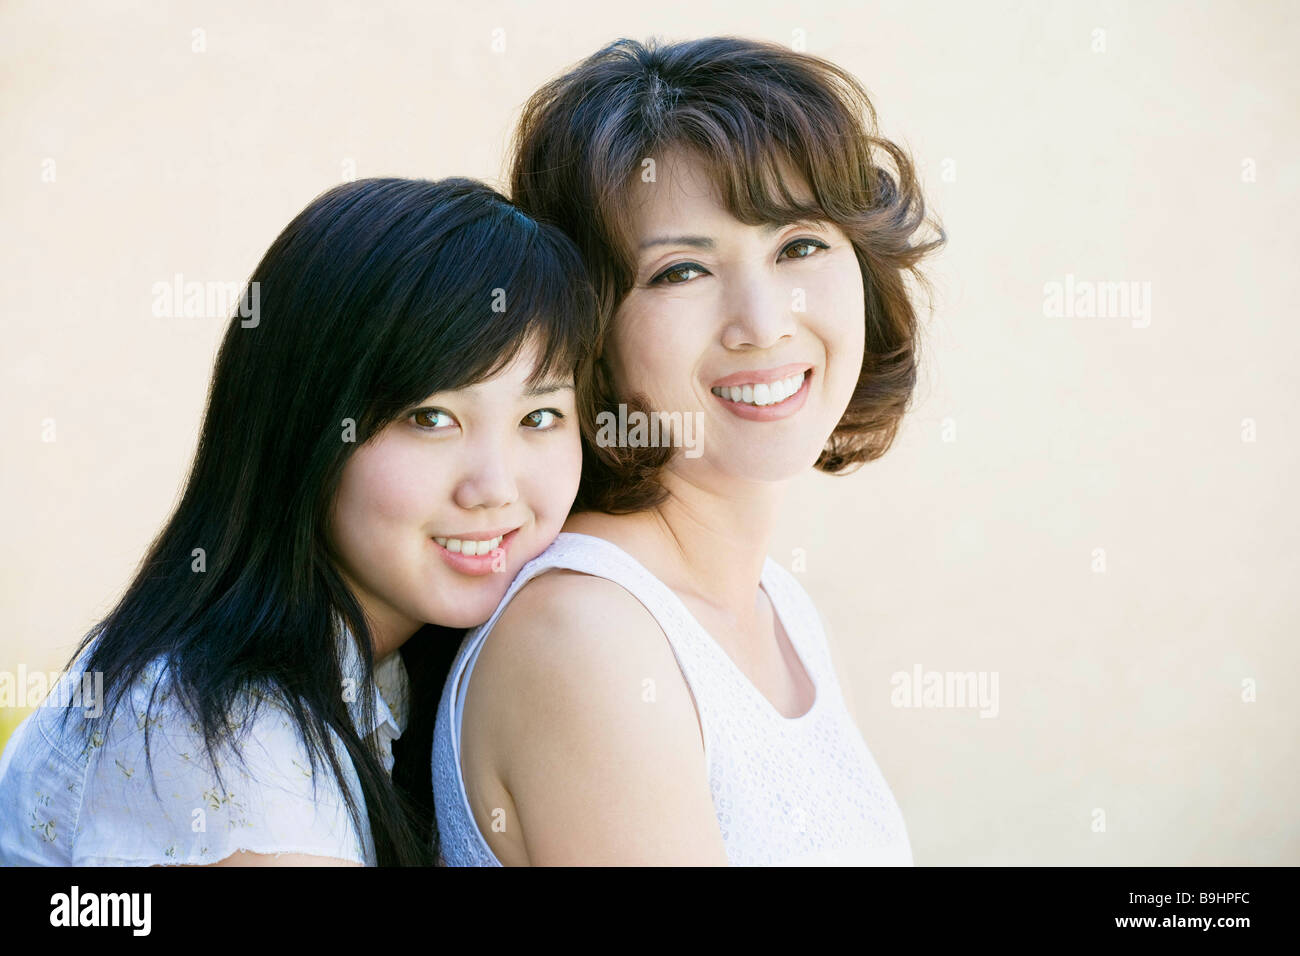 Японские дочки мамы папы. Японки мать и дочь красотки. Сразу две улыбки маме. Дочка и мать улыбаются лоб в лоб. Её улыбка мама фото фон.